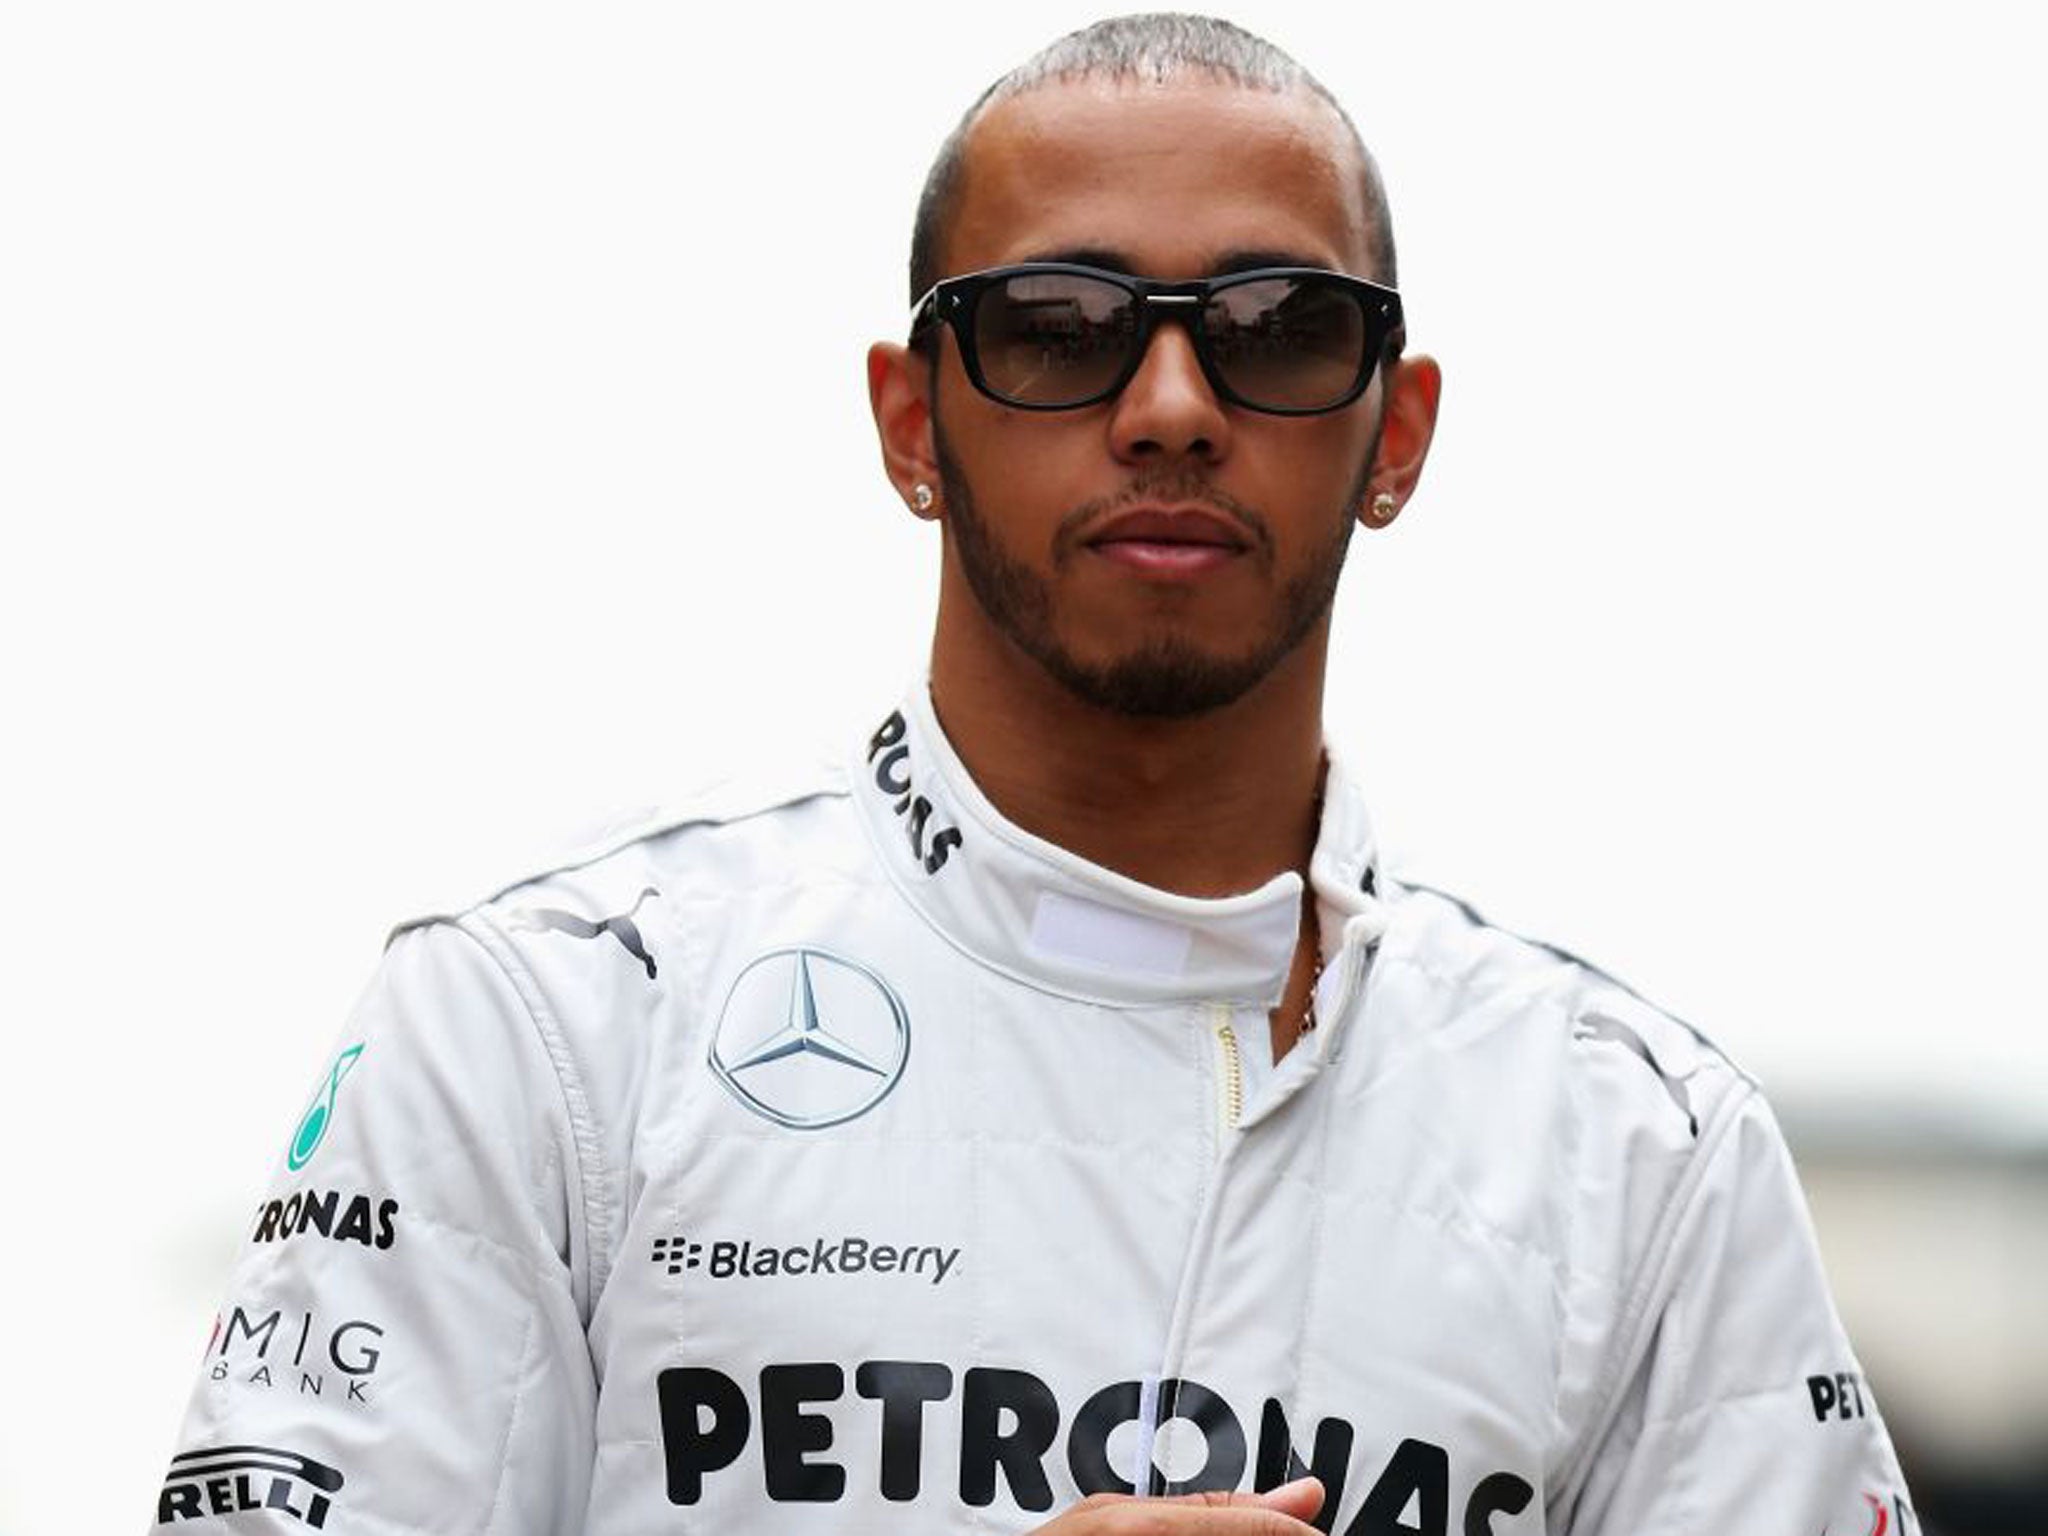 El piloto de Mercedes se encamina a obtener un nuevo campeonato del mundo